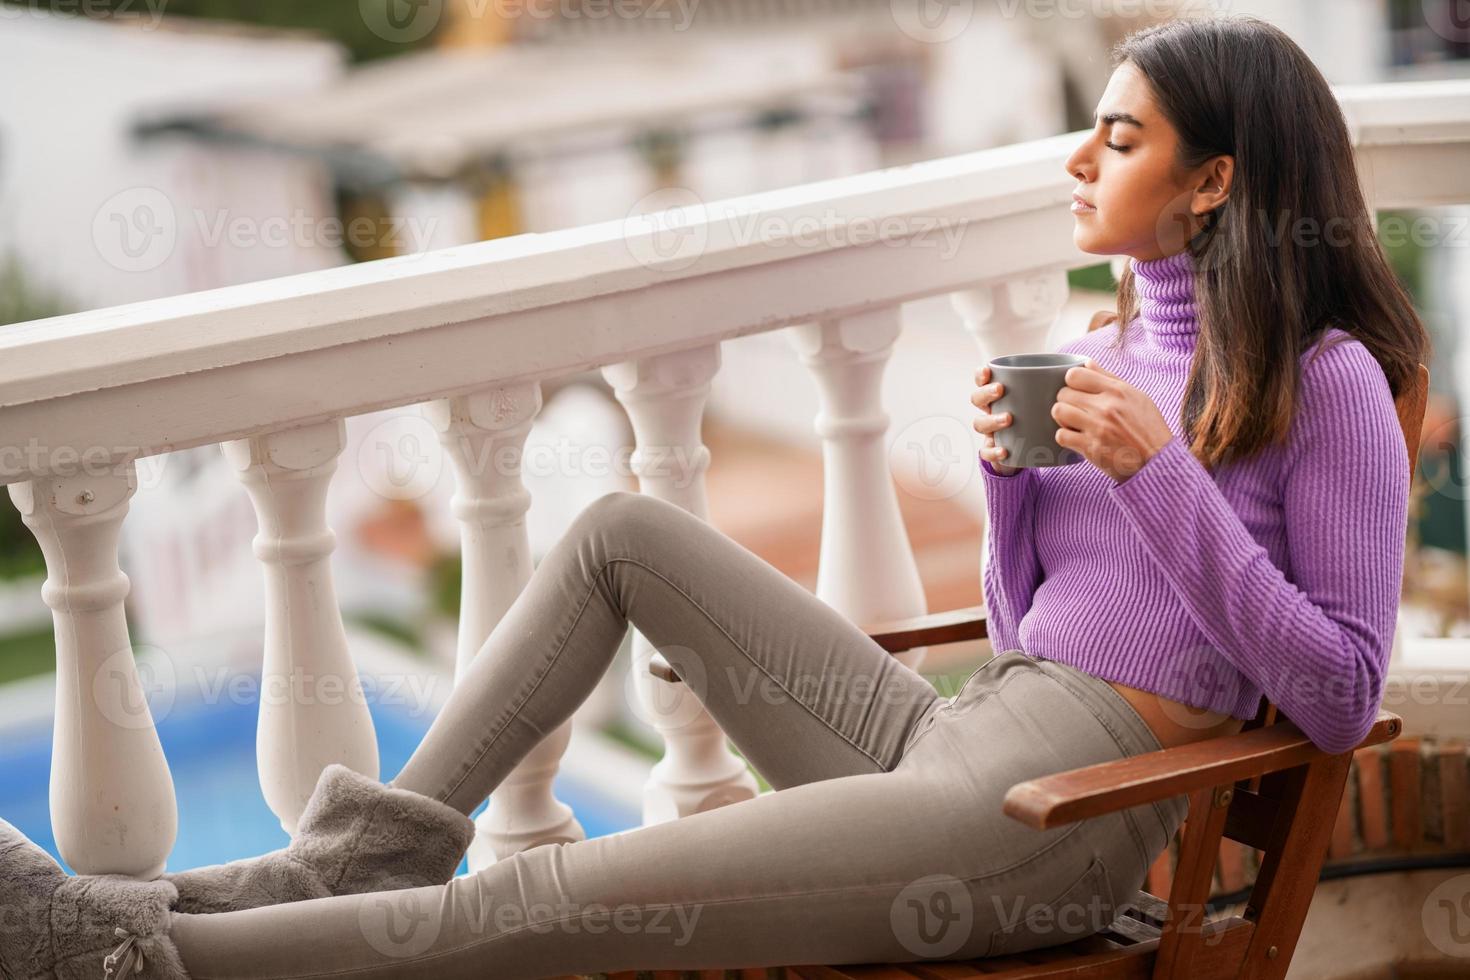 mulher persa na varanda dela tomando uma caneca de café foto